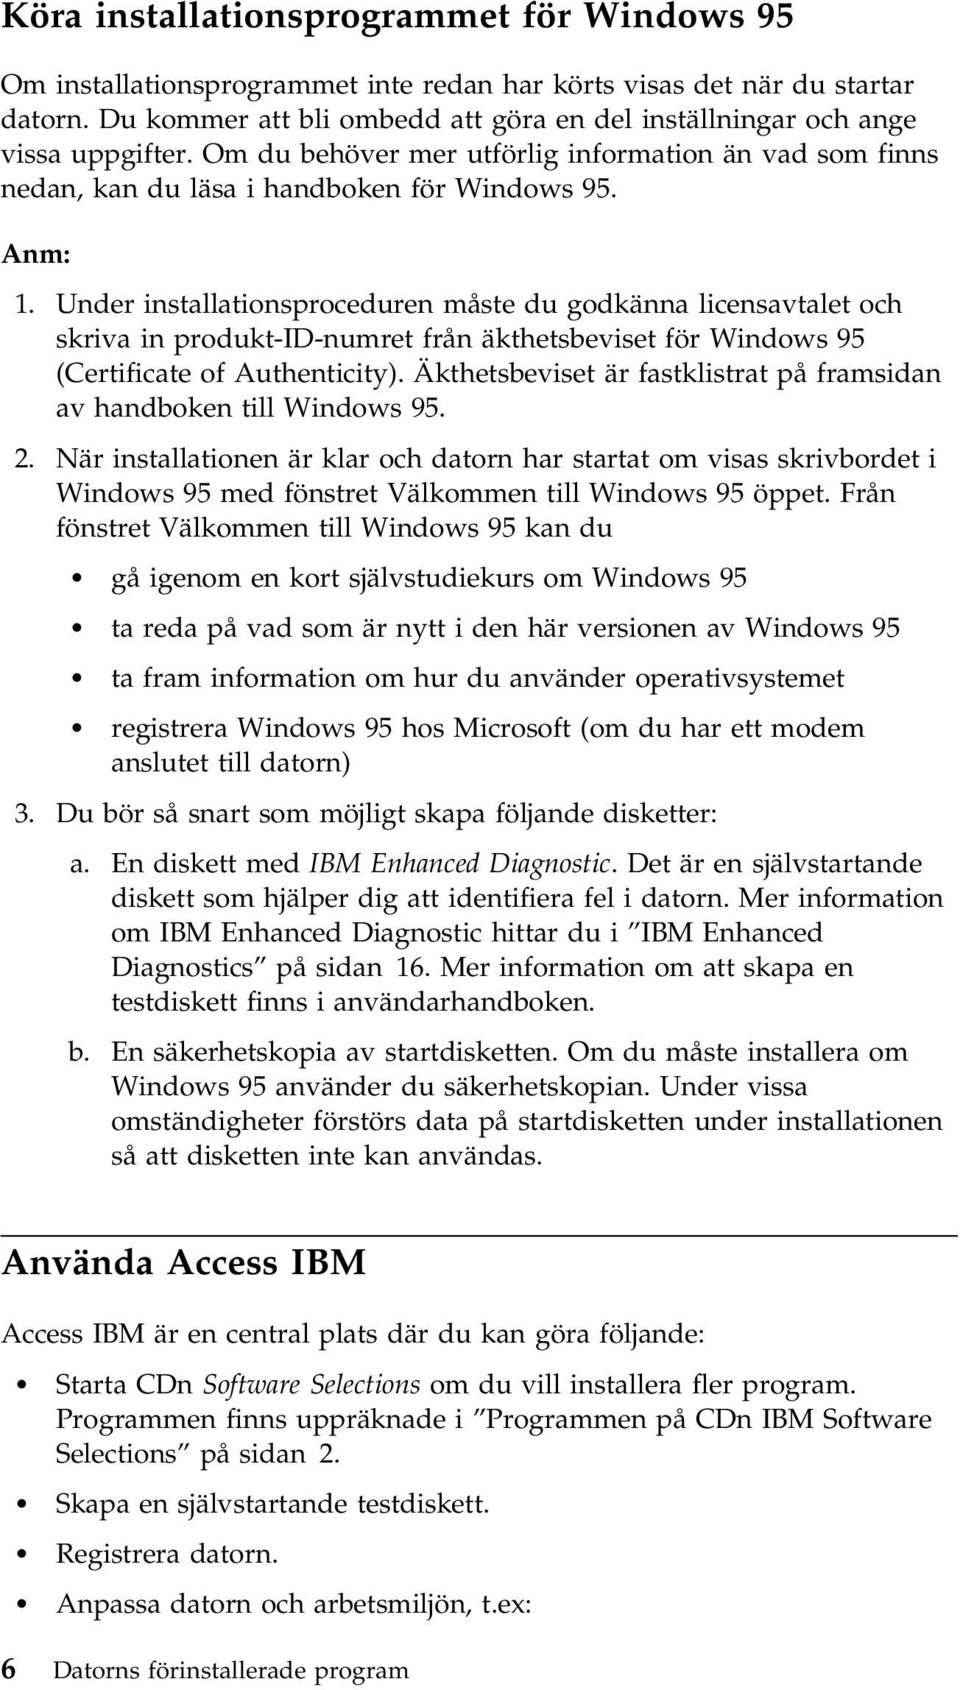 Under installationsproceduren måste du godkänna licensavtalet och skriva in produkt-id-numret från äkthetsbeviset för Windows 95 (Certificate of Authenticity).